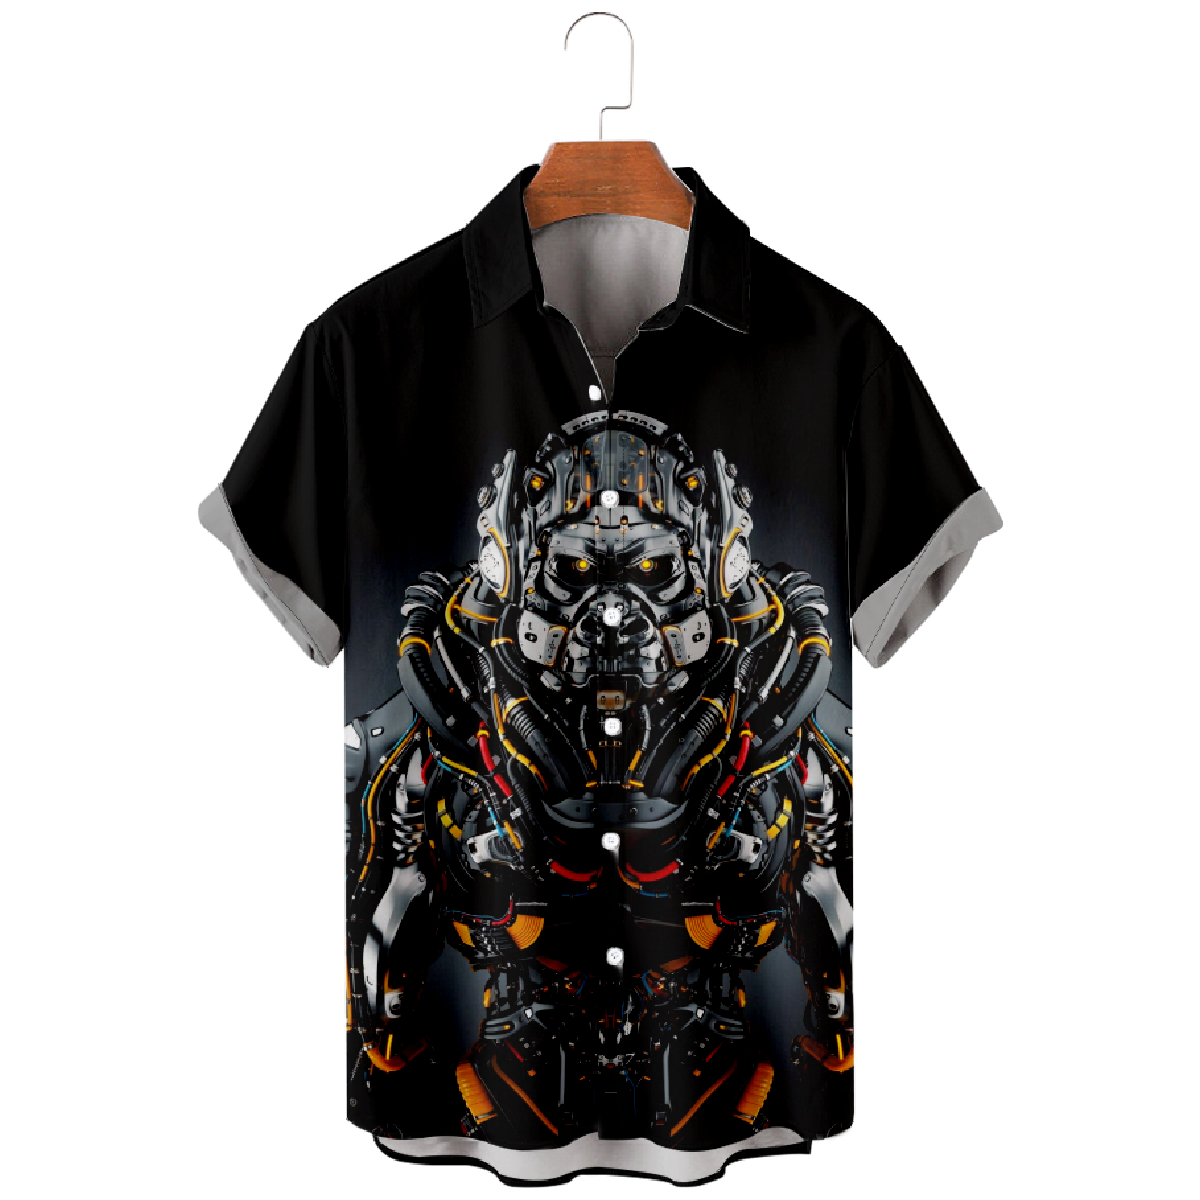 Robot Gorilla Button Up Shirt Men's Robot Culture Shirt Short Sleeve Shirt